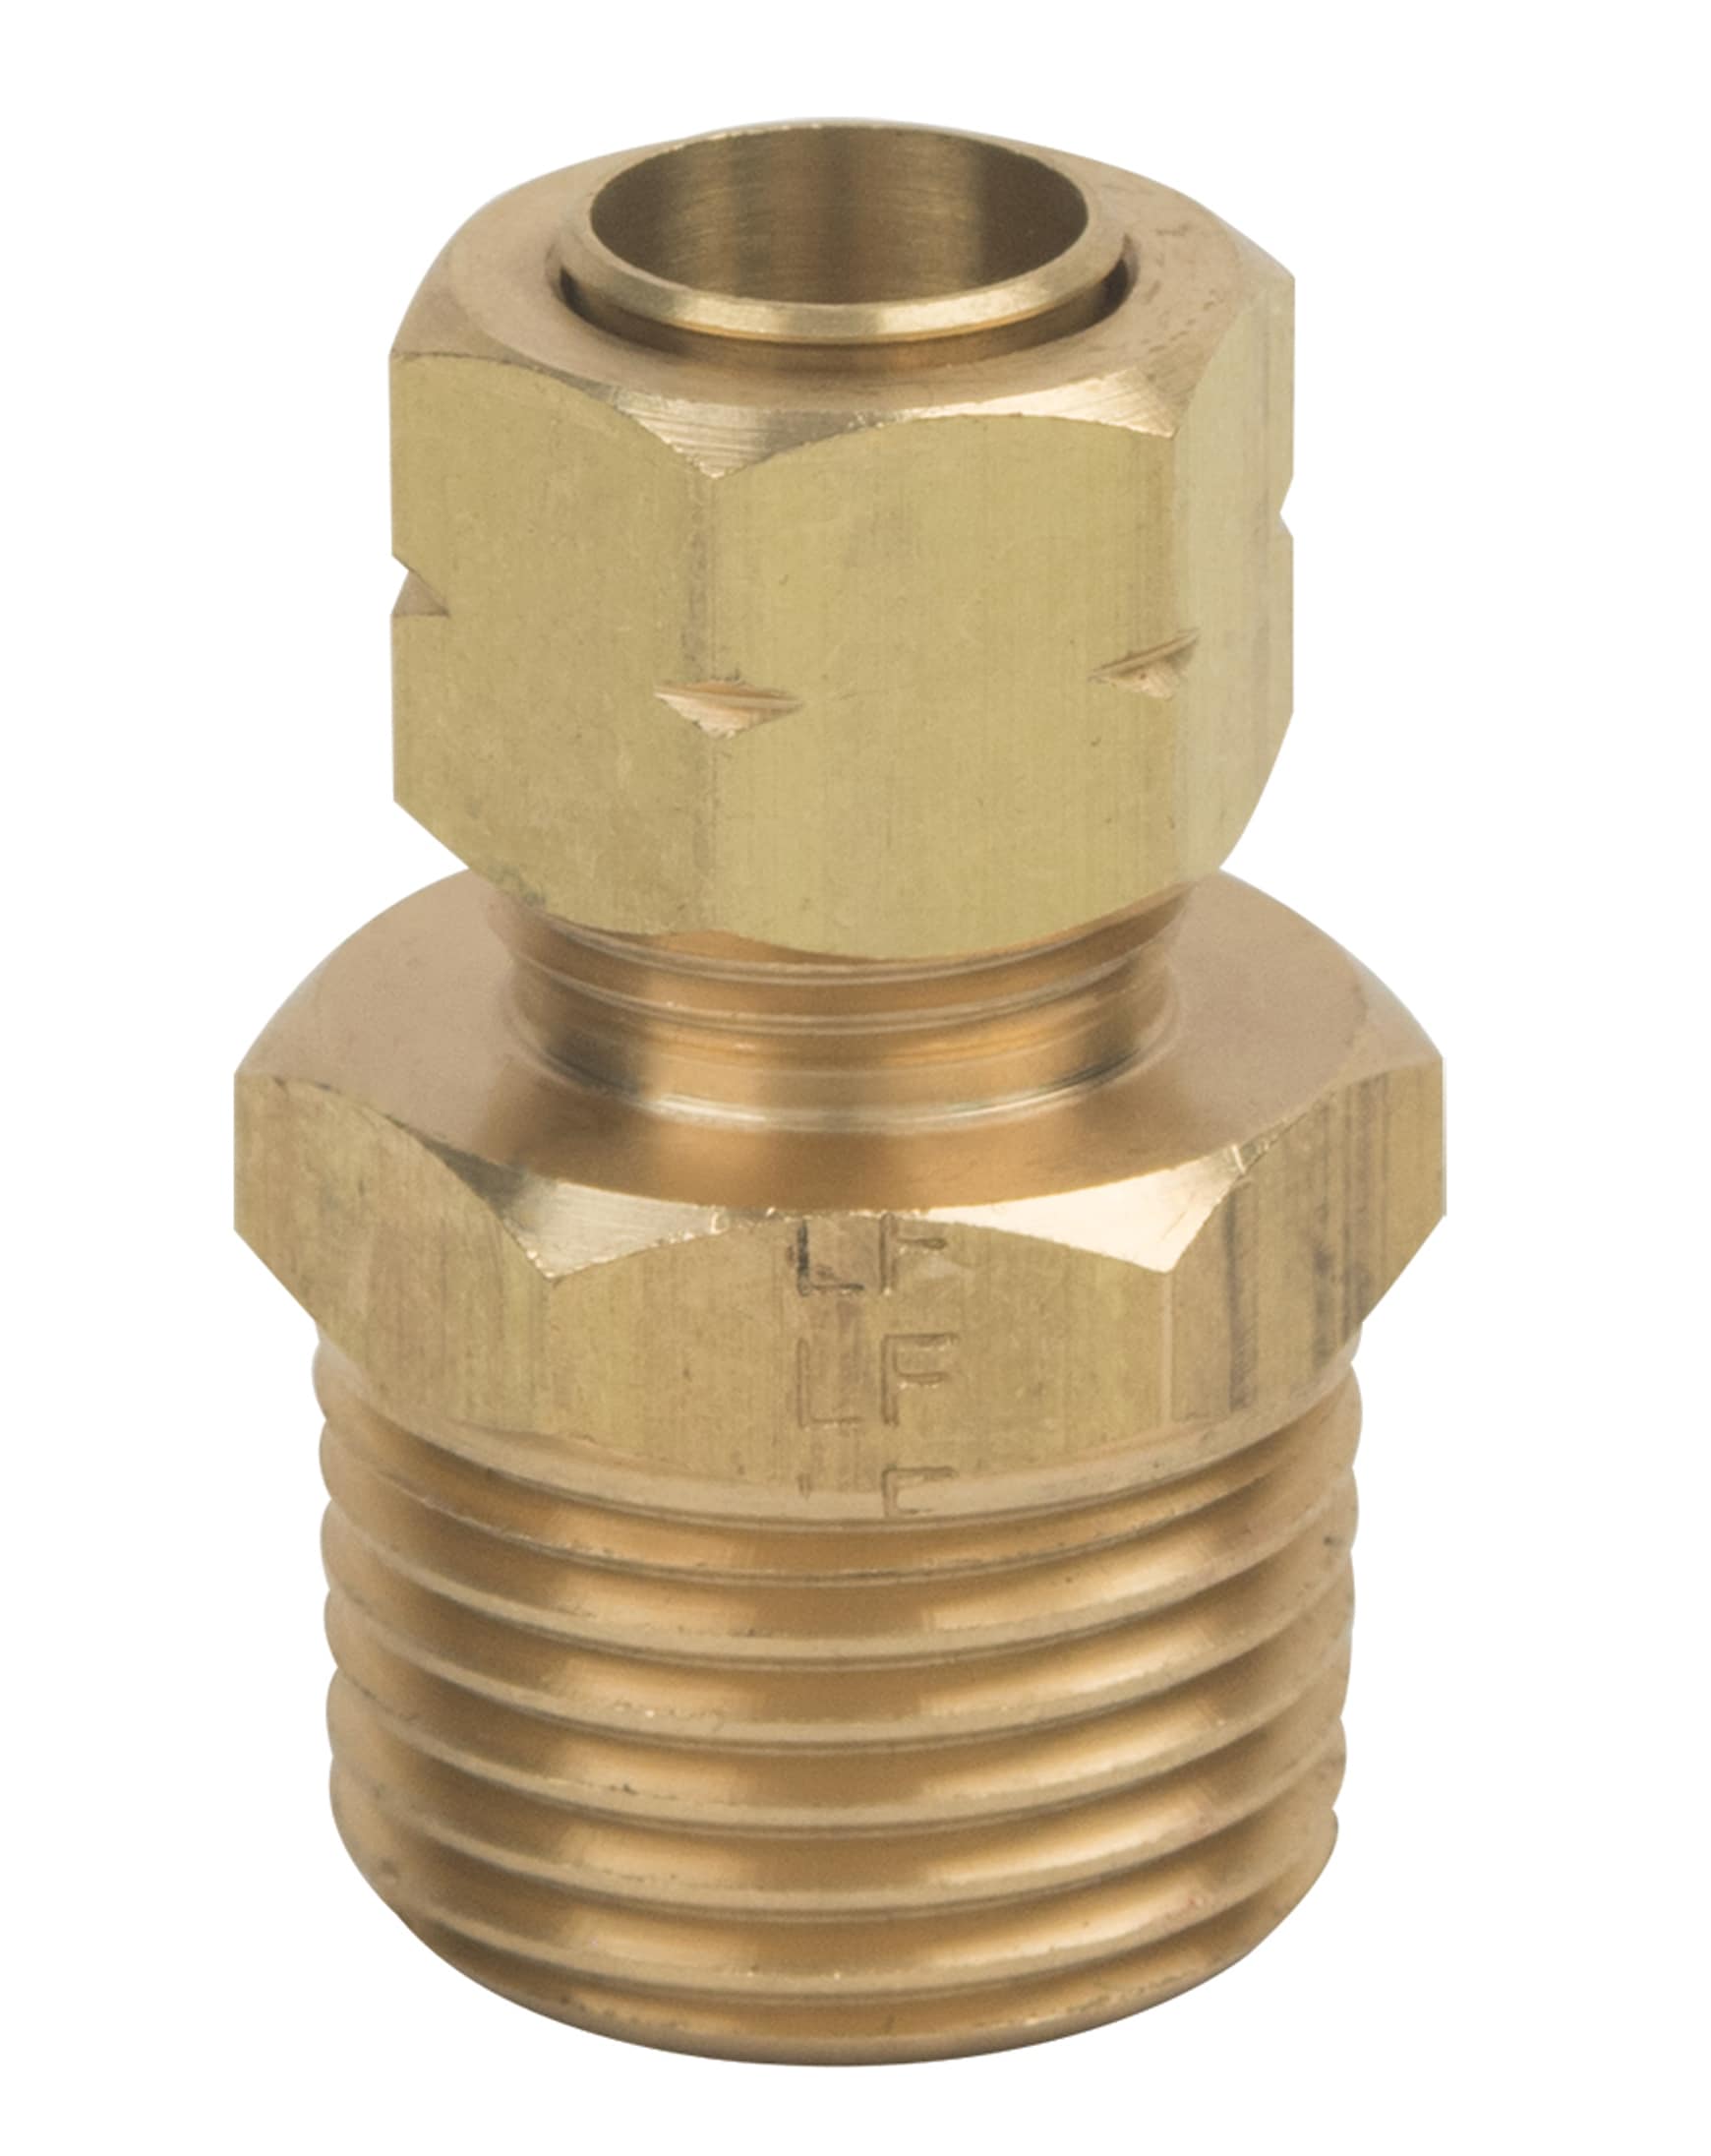 5/8 OD Compression (1/2 Copper) x 1/2 PEX Brass Adapter (Lead